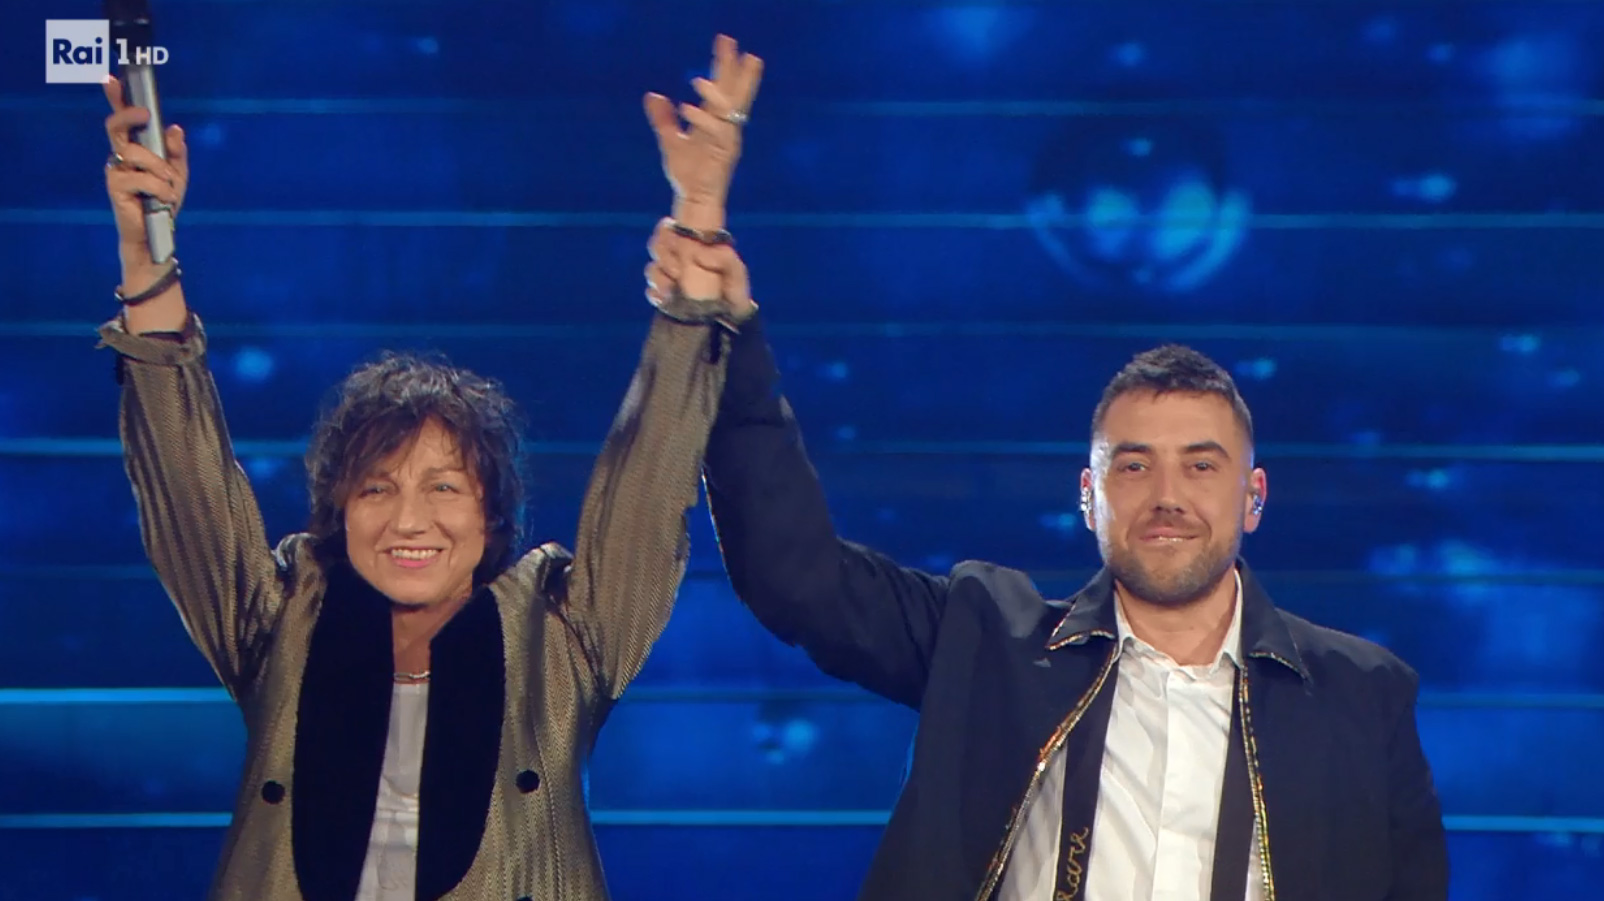 Gianna Nannini con Coez cantano 'Motivo' nella Quarta Serata di Sanremo 2020